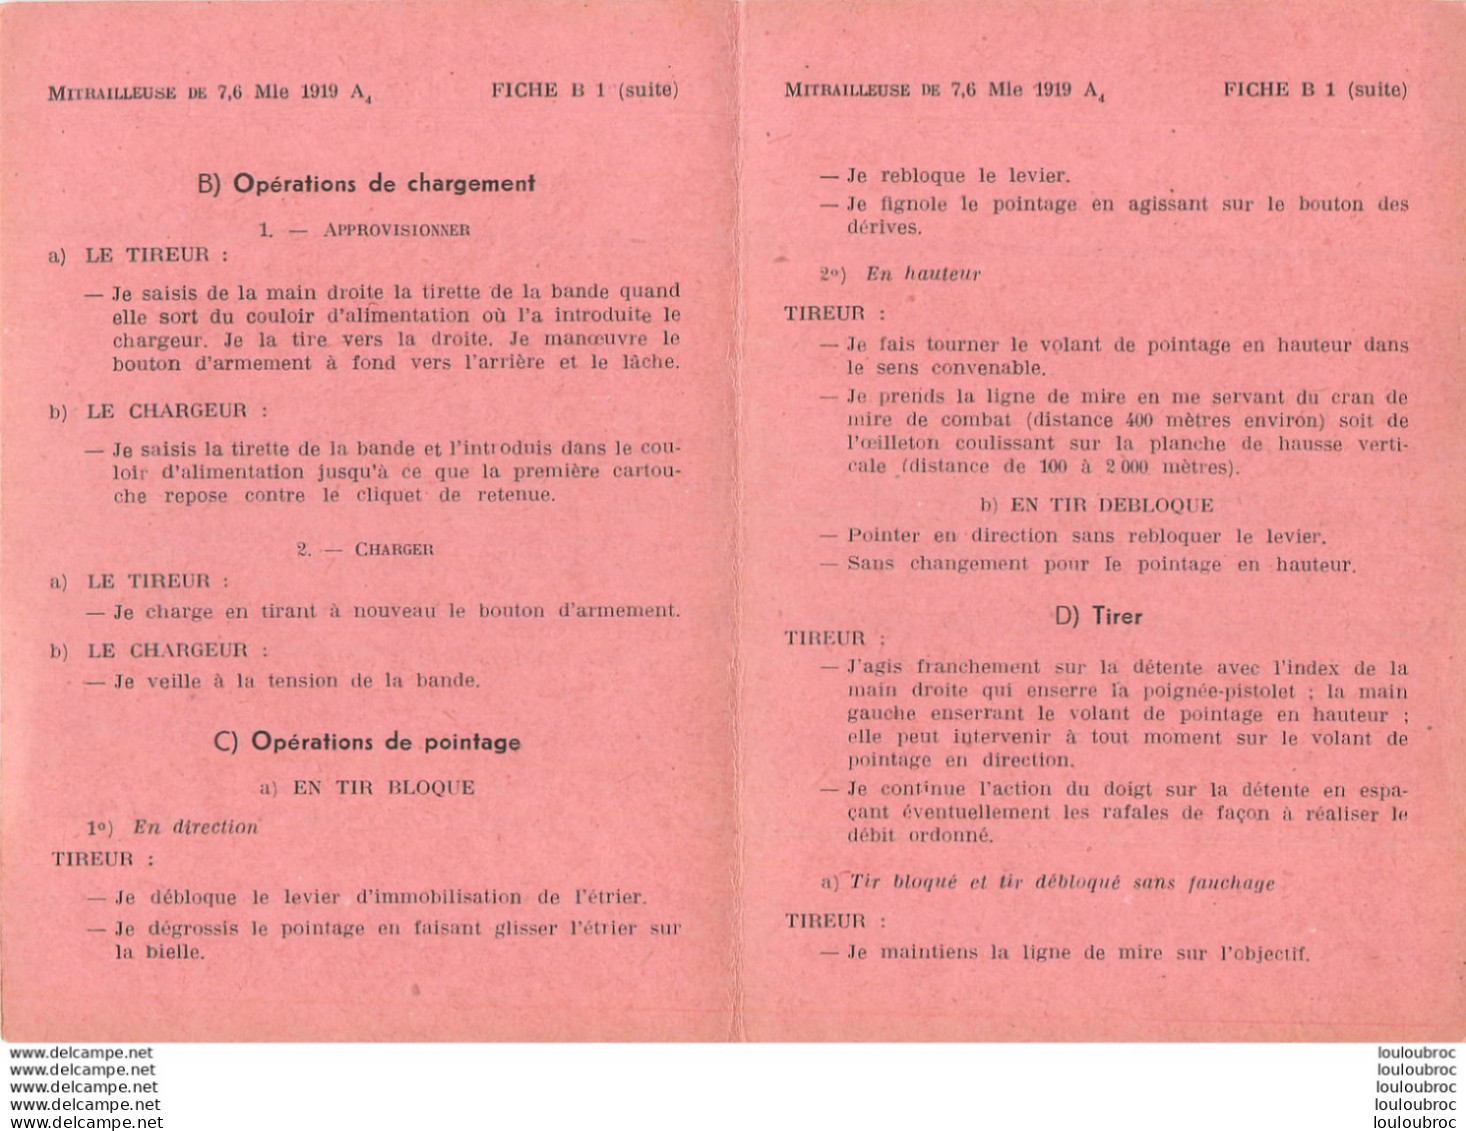 MITRAILLEUSE DE 7.6  MODELE 1919 A4 NOTICE COMPLETE AVEC TOUTES SES FICHES DE B1 A B7 - Decorative Weapons